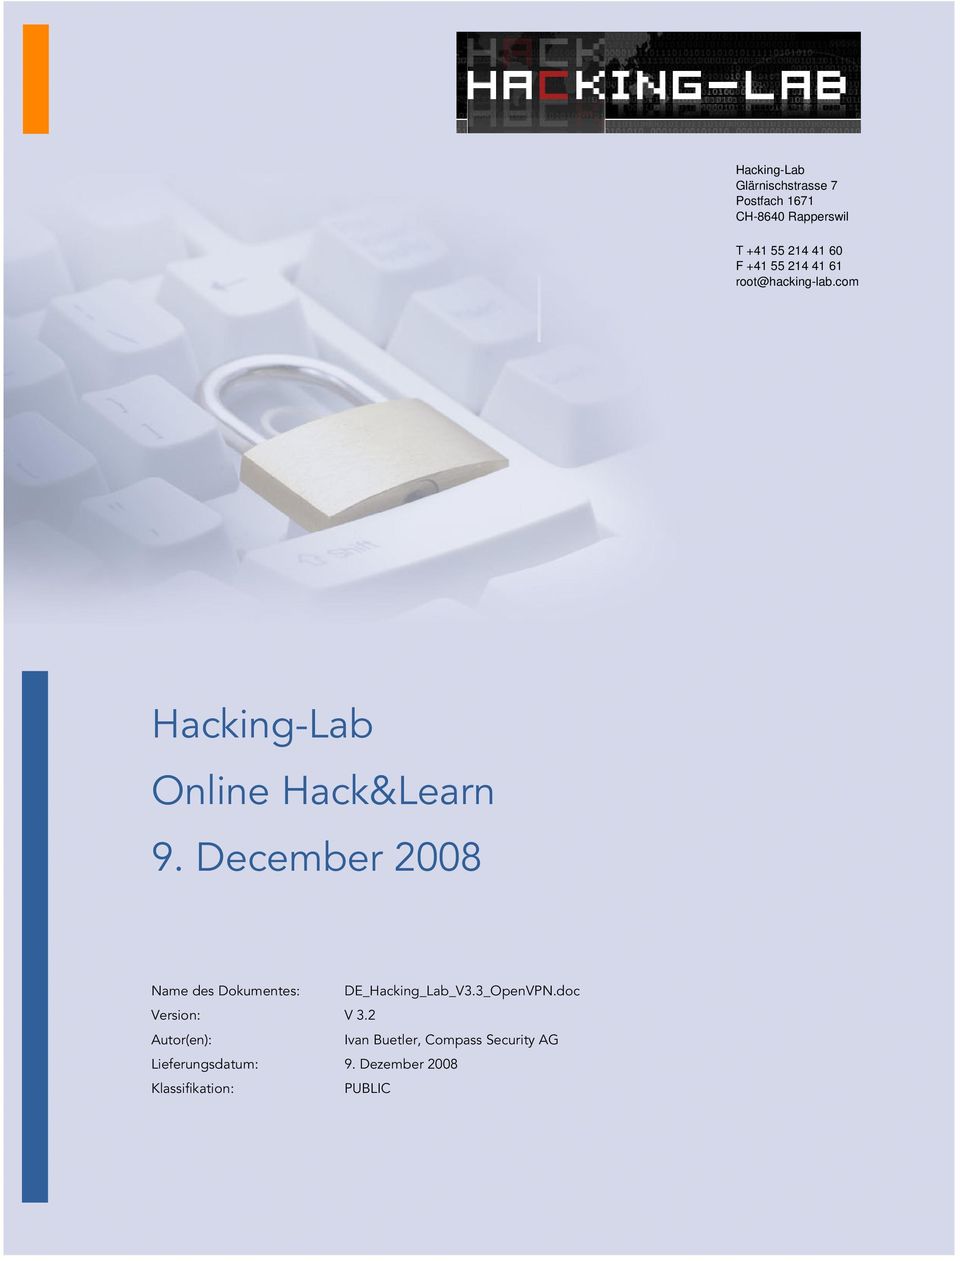 December 2008 Name des Dokumentes: DE_Hacking_Lab_V3.3_OpenVPN.doc Version: V 3.